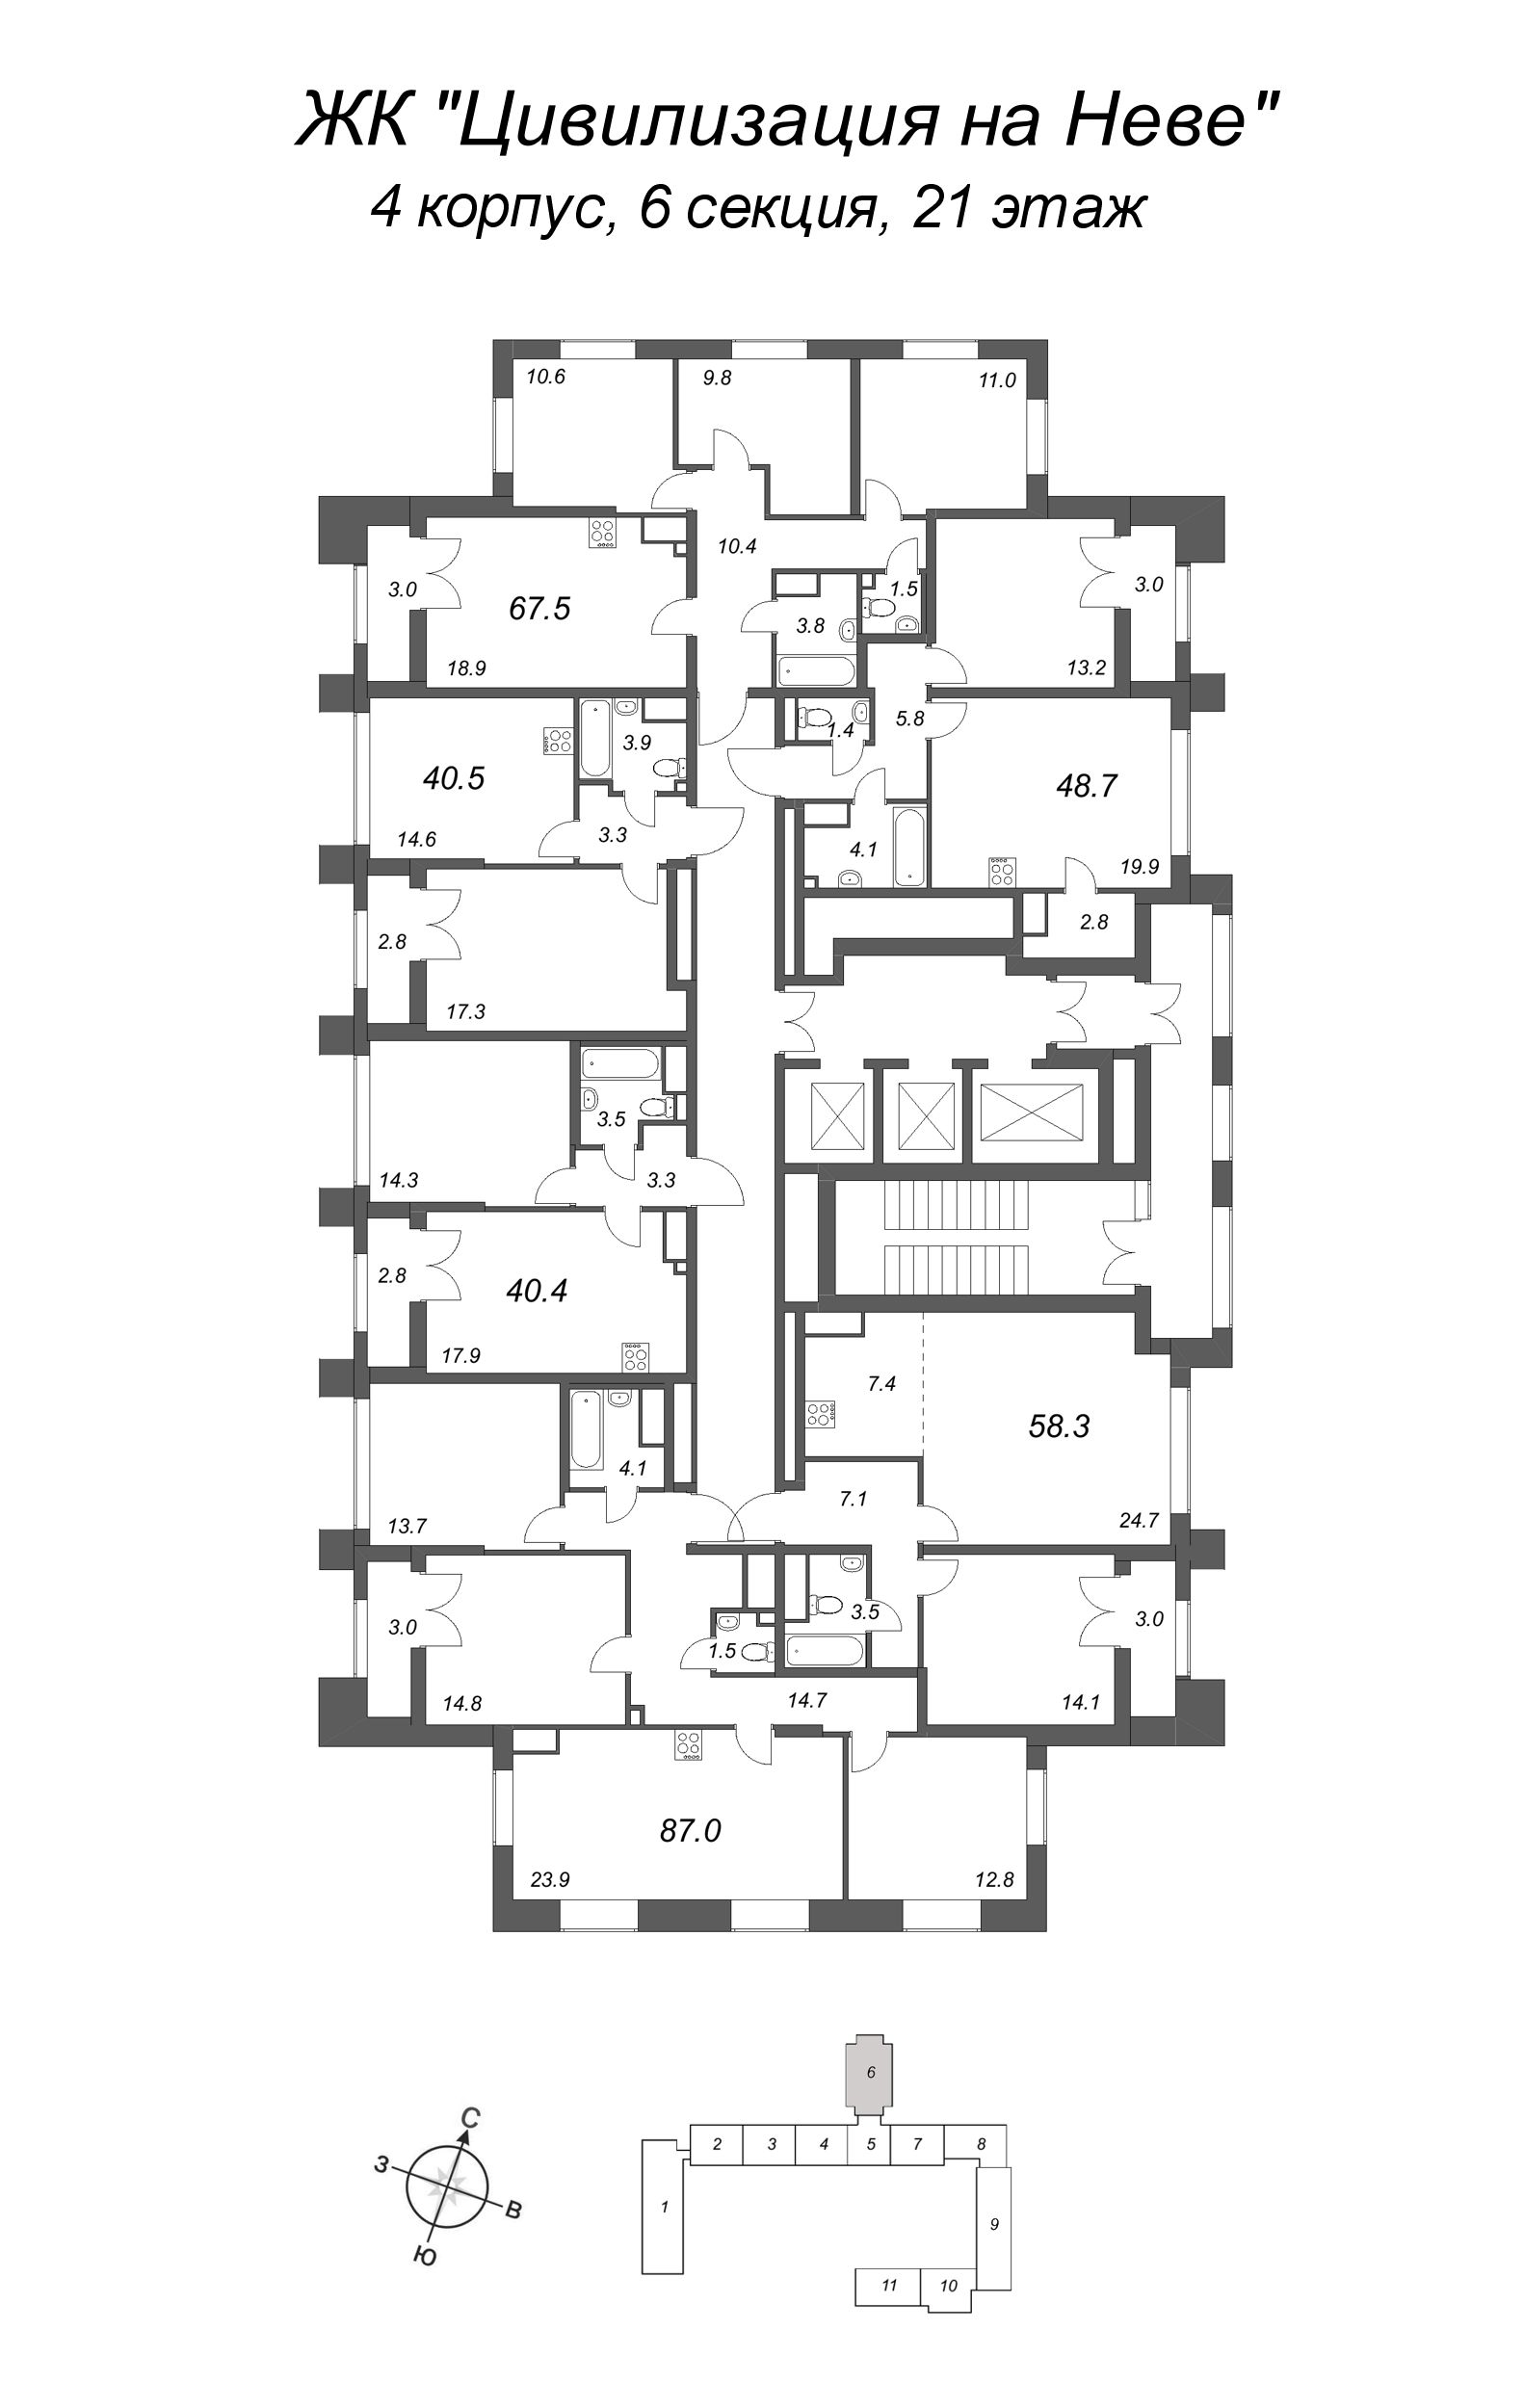 4-комнатная (Евро) квартира, 67.5 м² в ЖК "Цивилизация на Неве" - планировка этажа